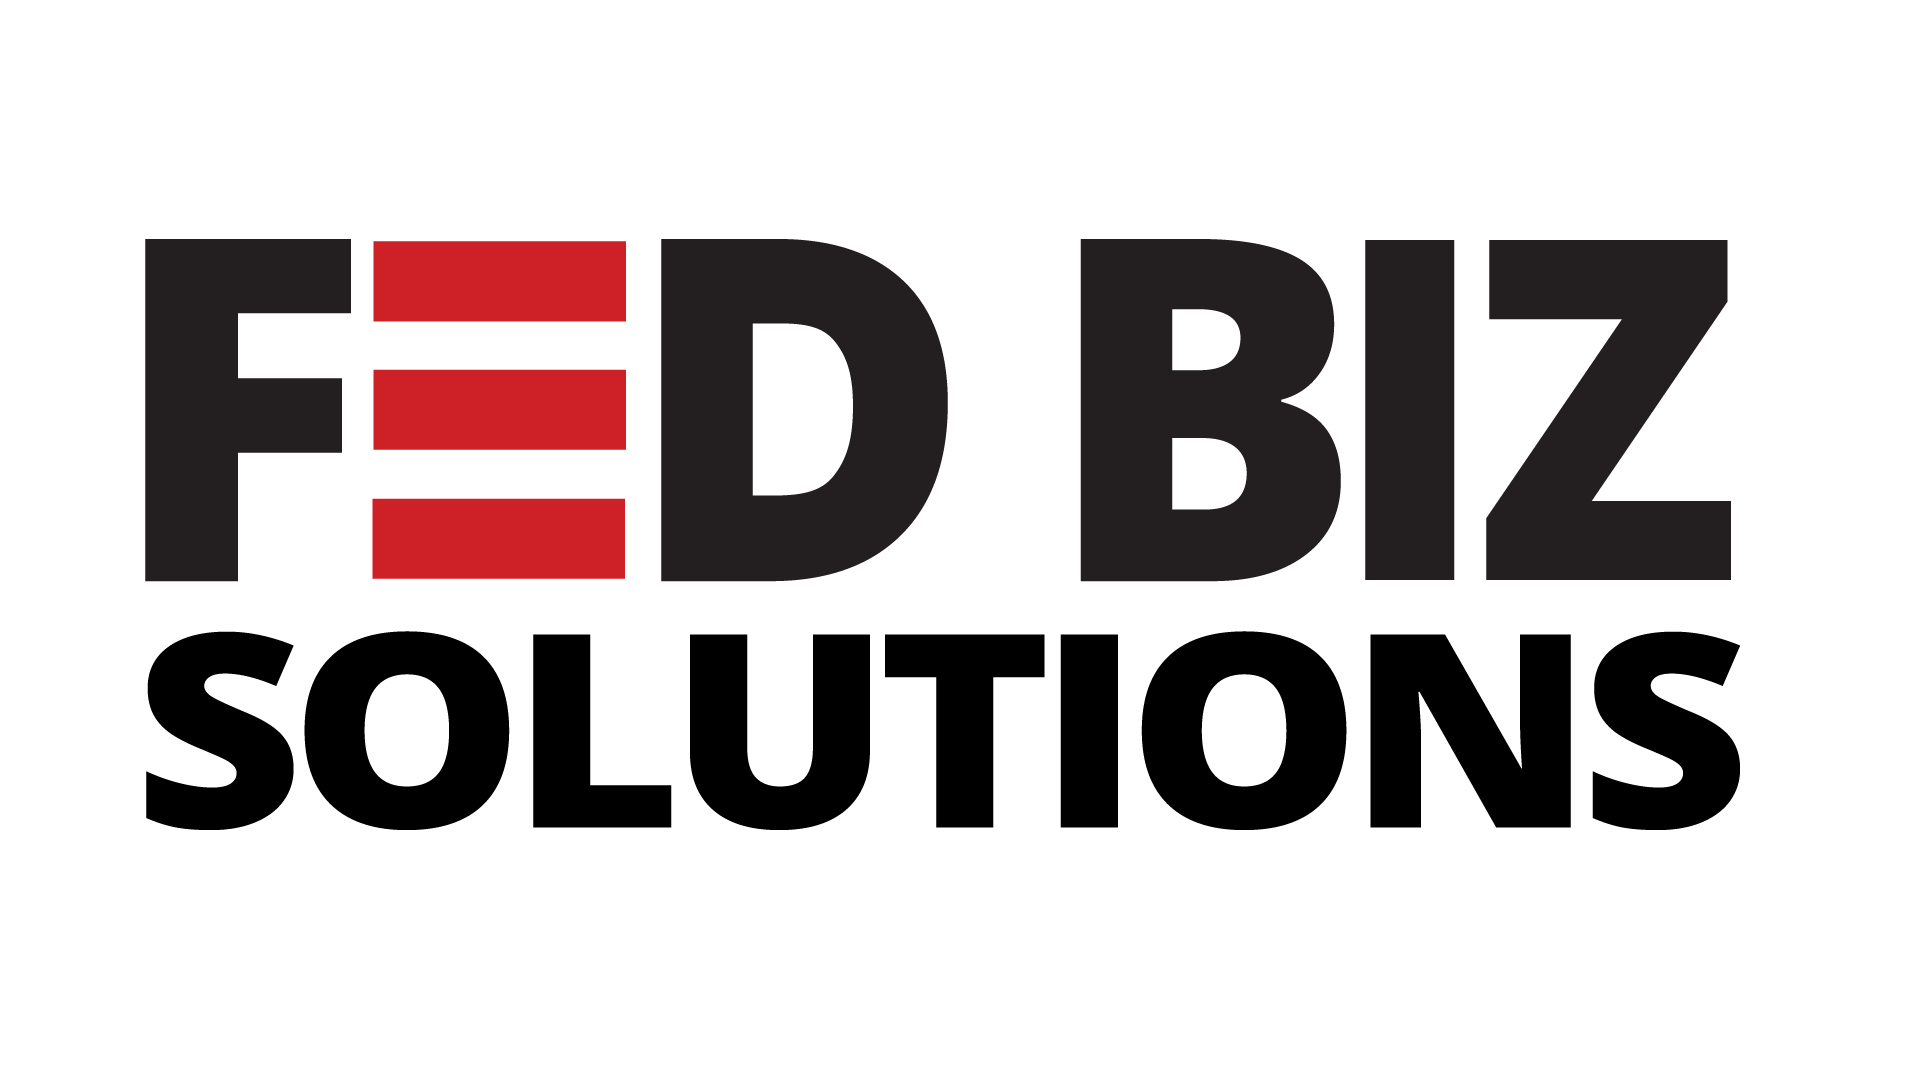 FedBiz Solutions